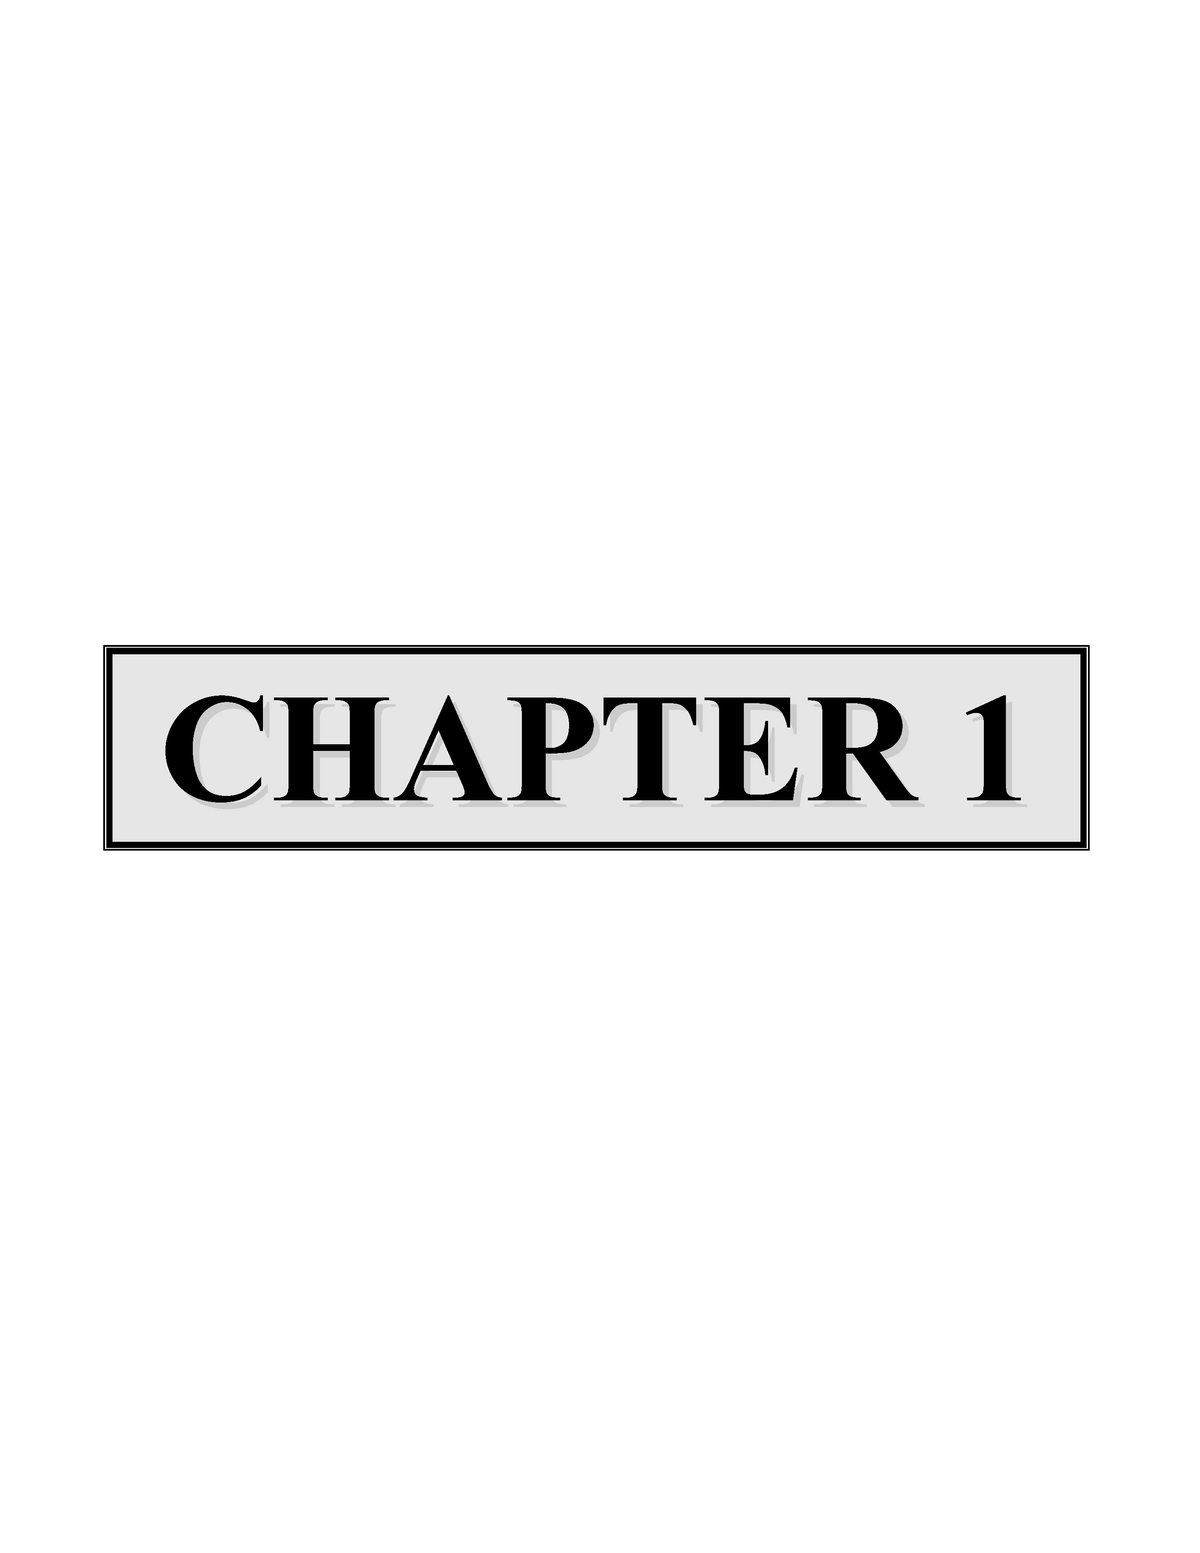 kleding Geestelijk hoofdzakelijk Mechanics of Materials 6th edition beer solution Chapter 1 - CHAPTER 1  PROBLEM 1 Two solid - Studocu